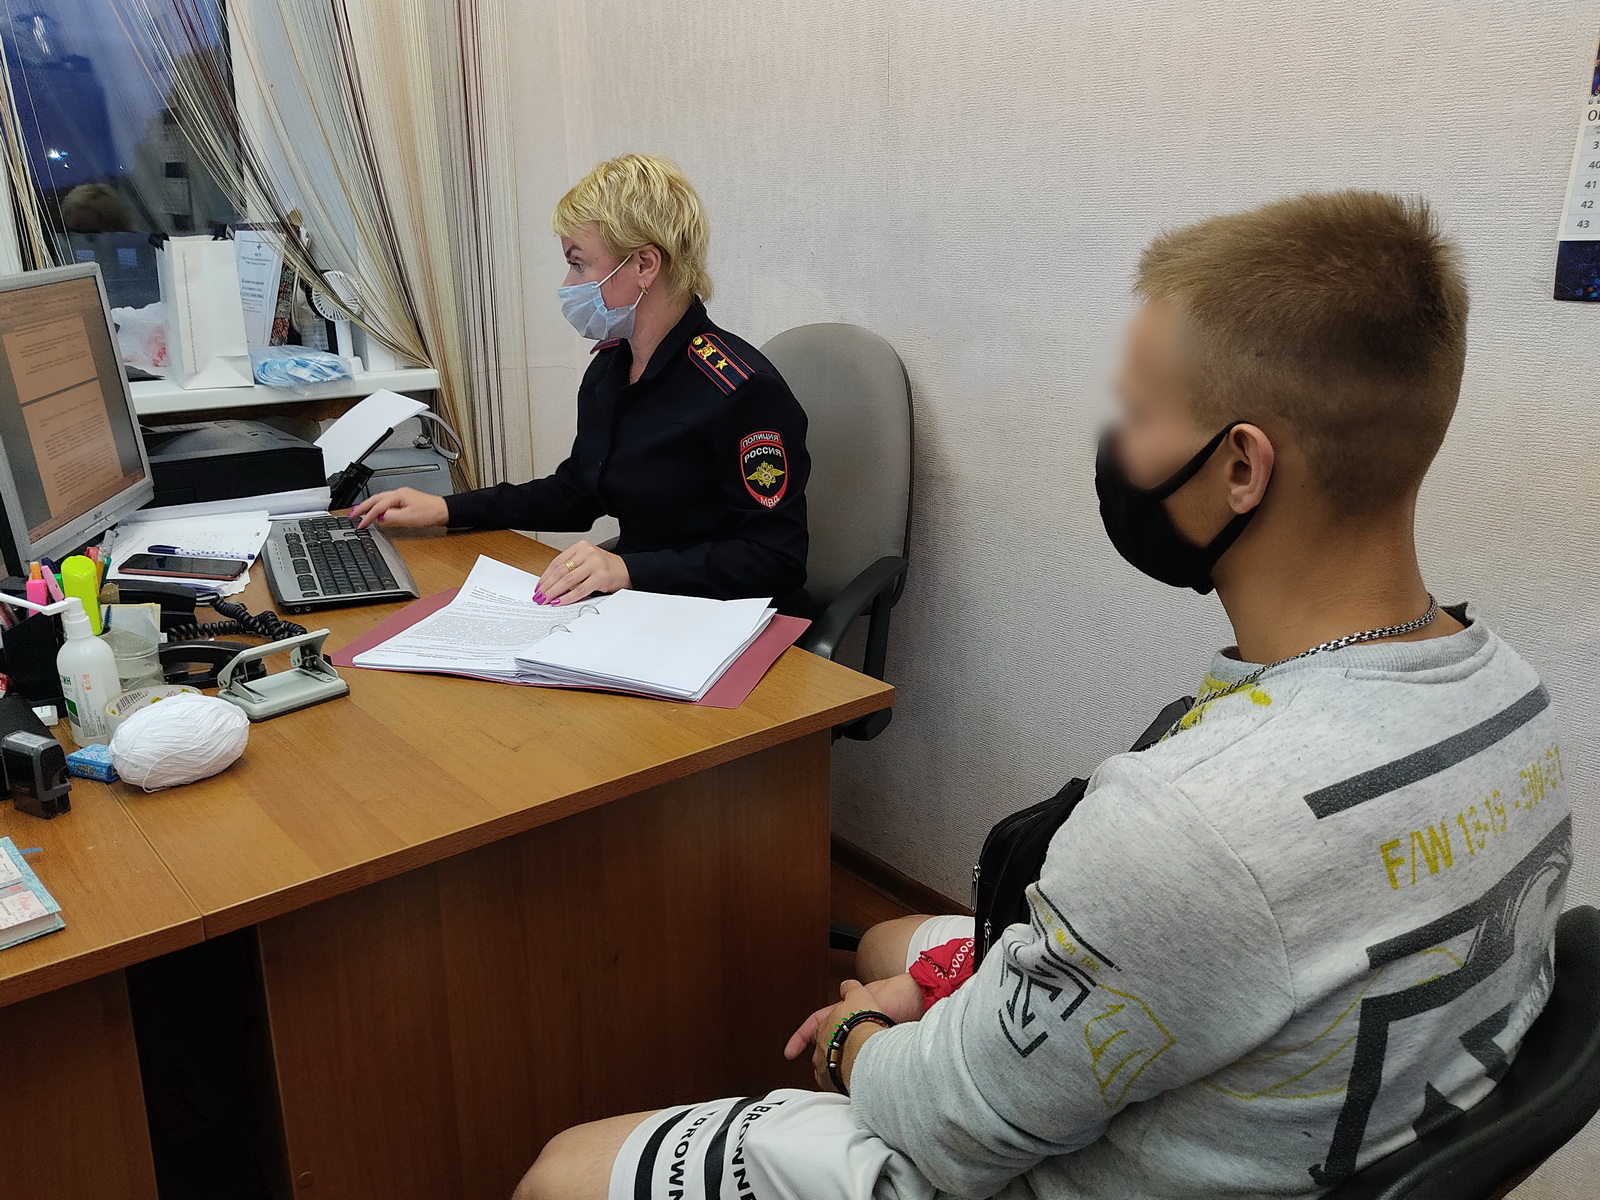 ДНК в помощь: полицейские в Костроме раскрыли грабеж спустя полтора года